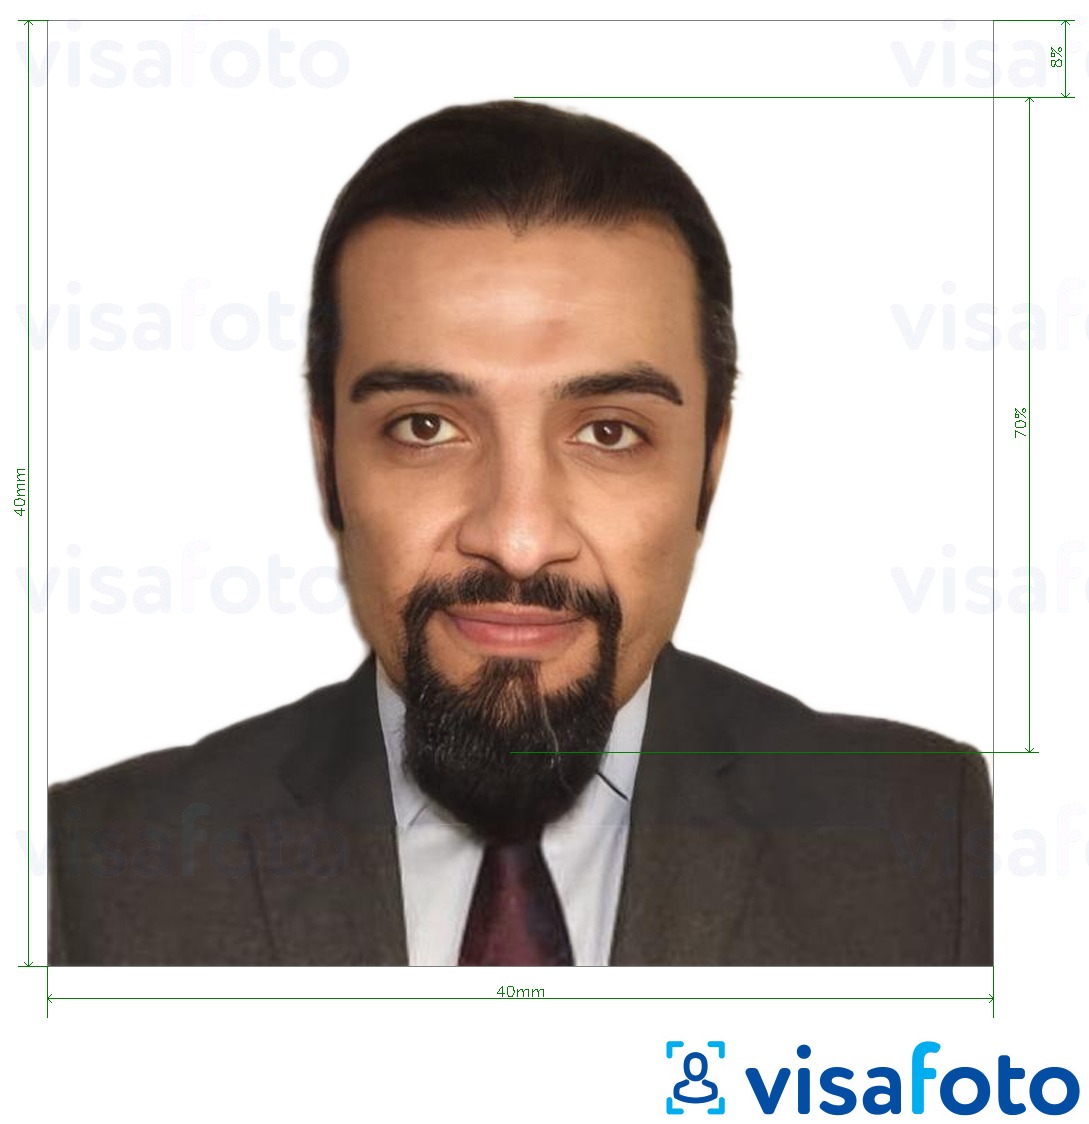 דוגמא לתמונה על דרכון סוריה 40X40 מ